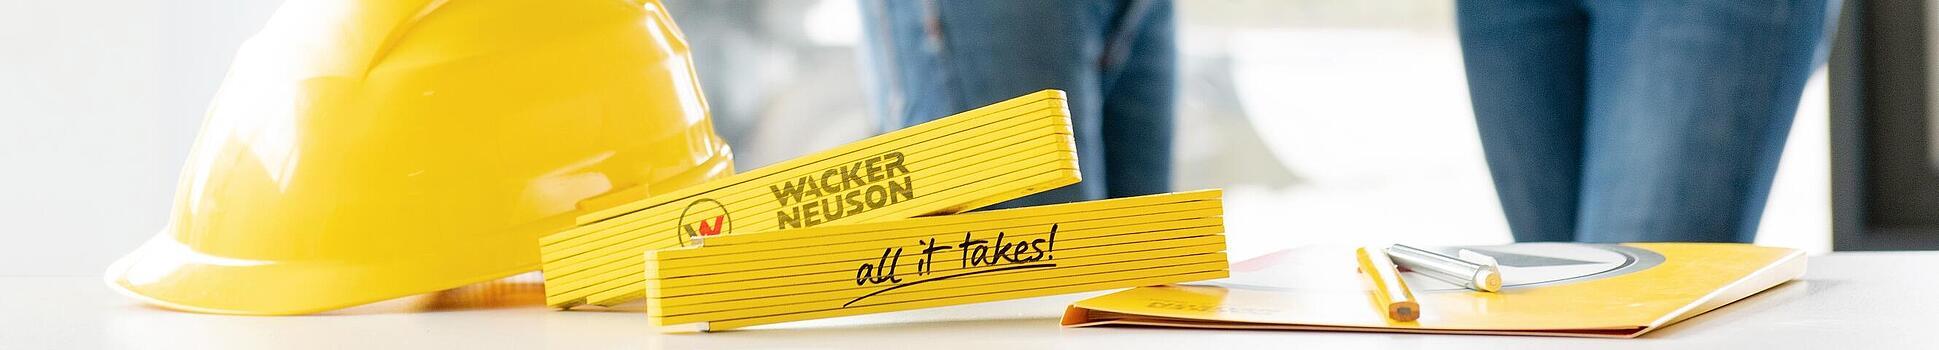 Gli articoli di merchandising Wacker Neuson si trovano su un tavolo in primo piano, i dipendenti Wacker Neuson sono sullo sfondo.